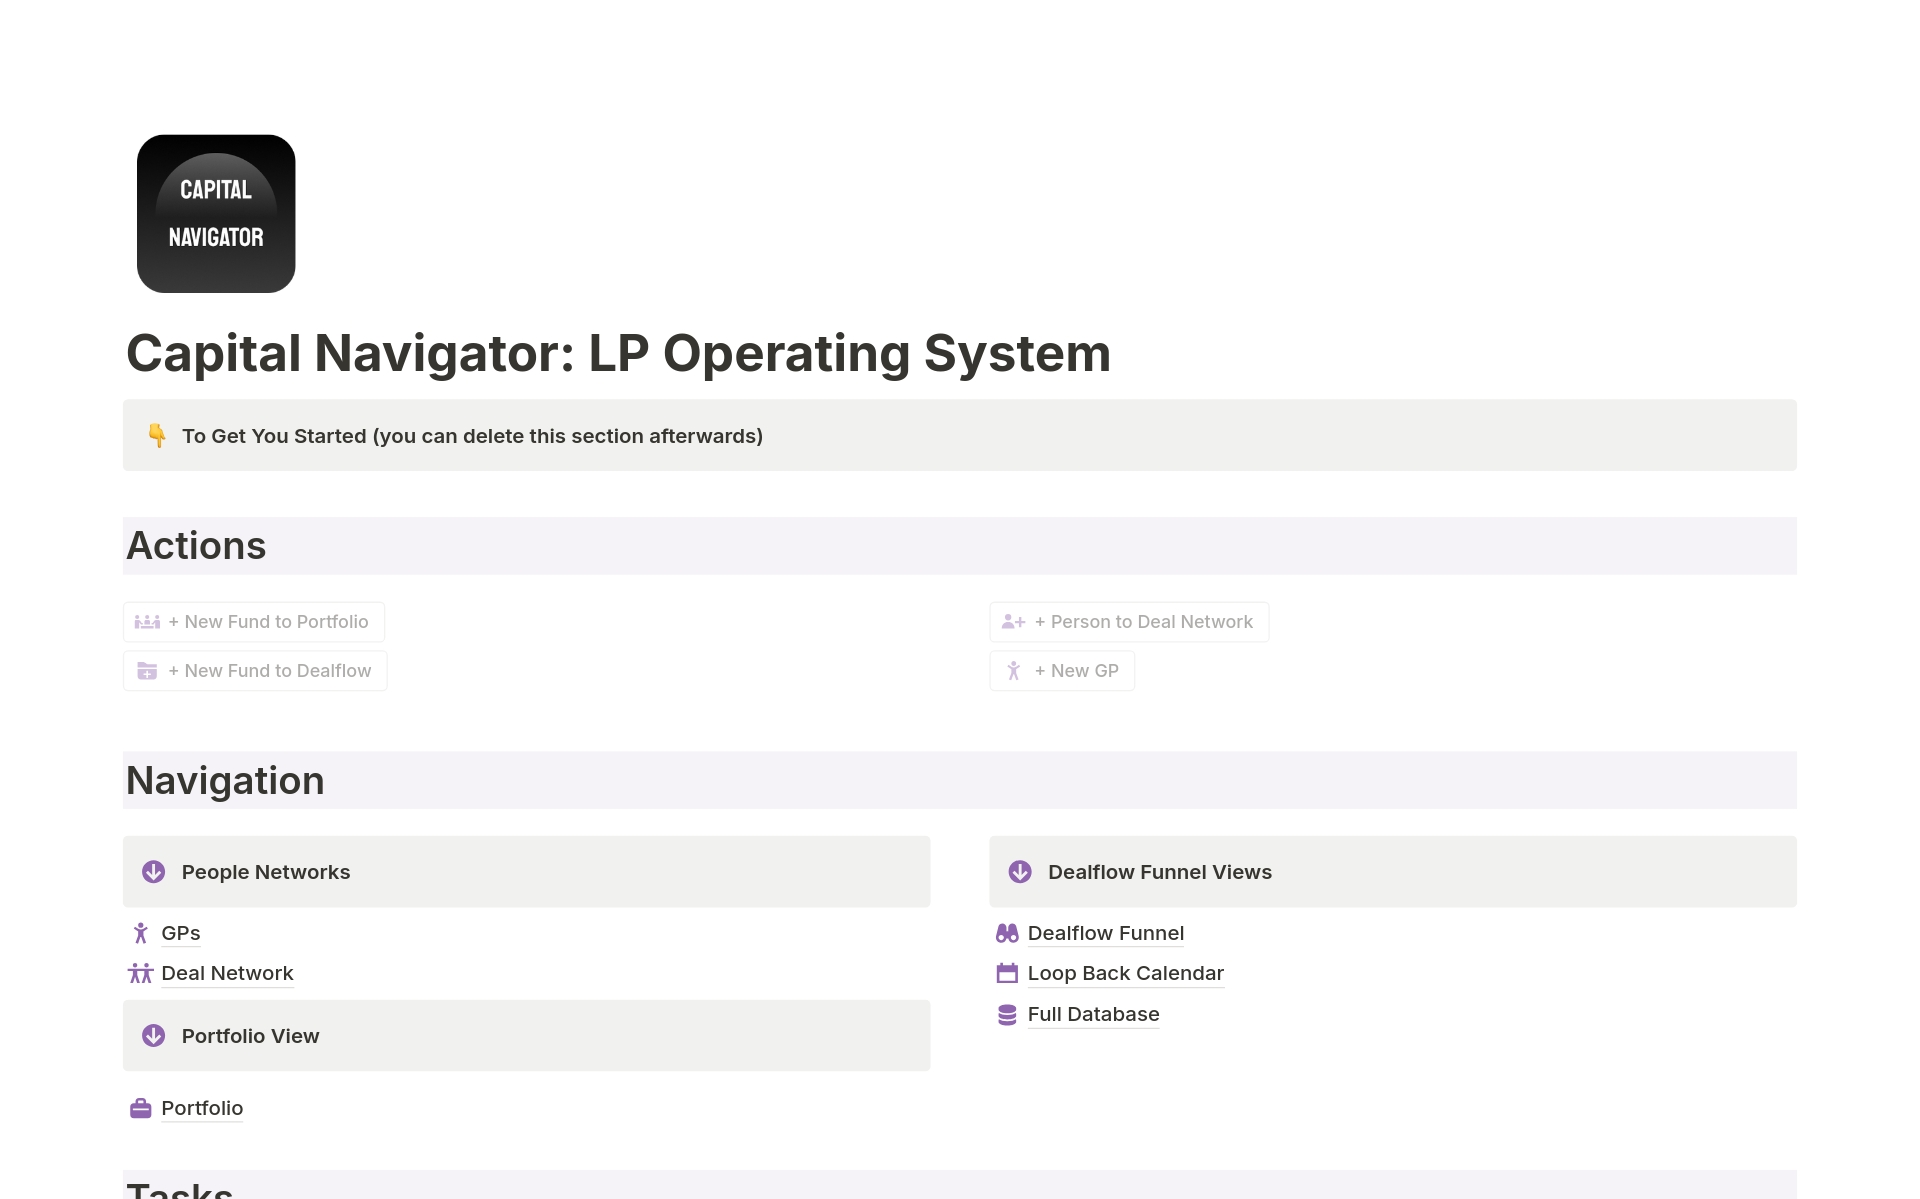 Vista previa de plantilla para Capital Navigator: OS for Limited Partners